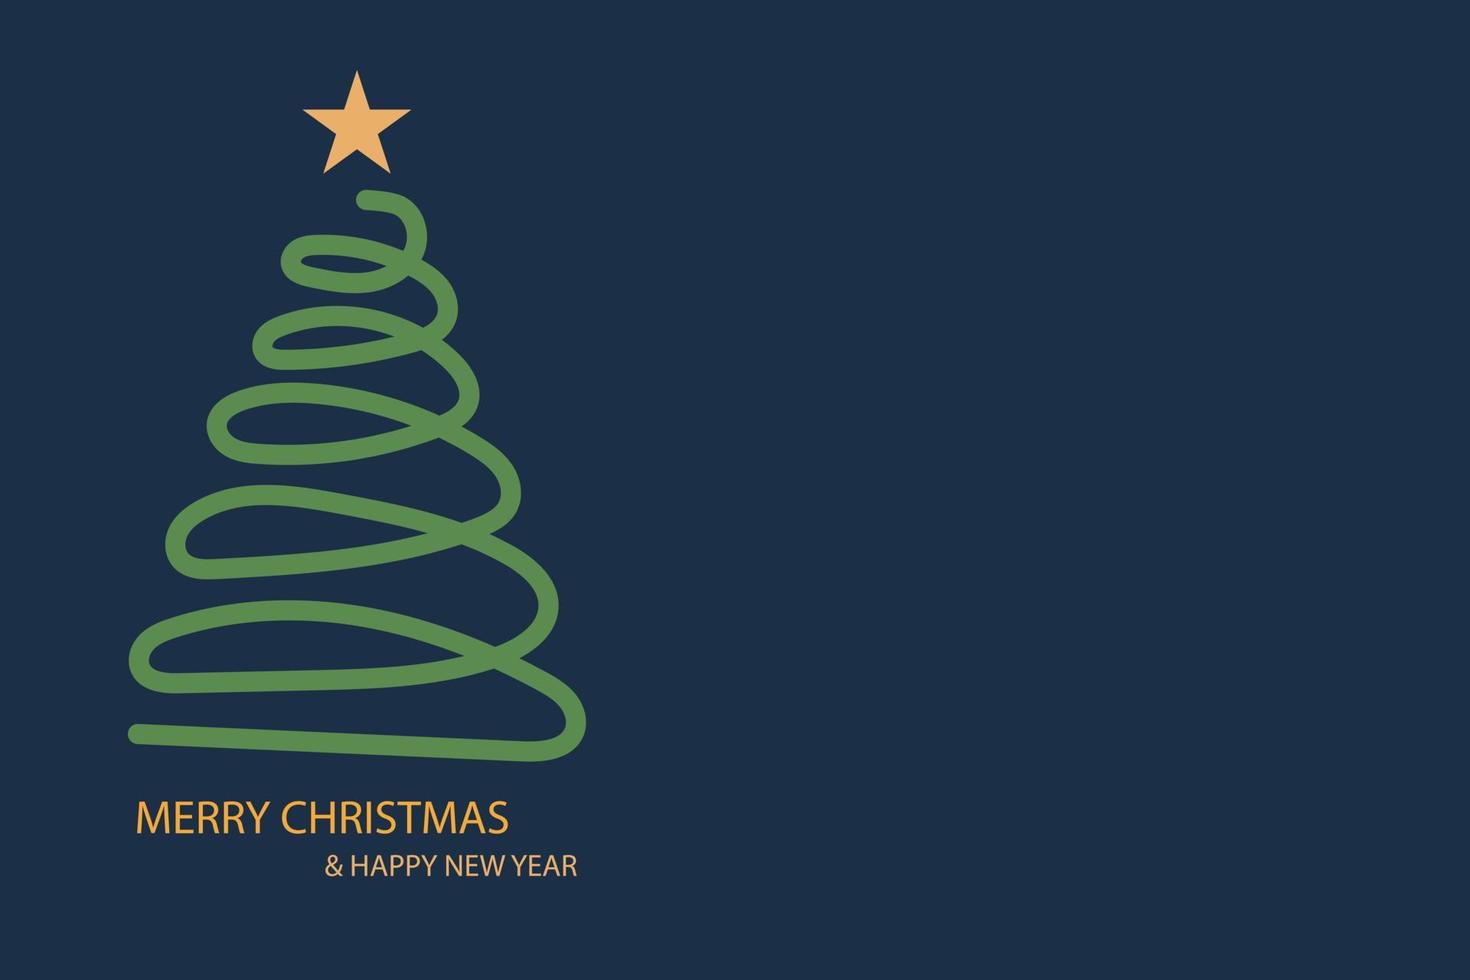 leuchtet grün glänzender weihnachtsbaum mit einem golden leuchtenden stern an der spitze und schnee auf blauem hintergrund. Feiertagsfeier. helle Lichtdekoration. vektor